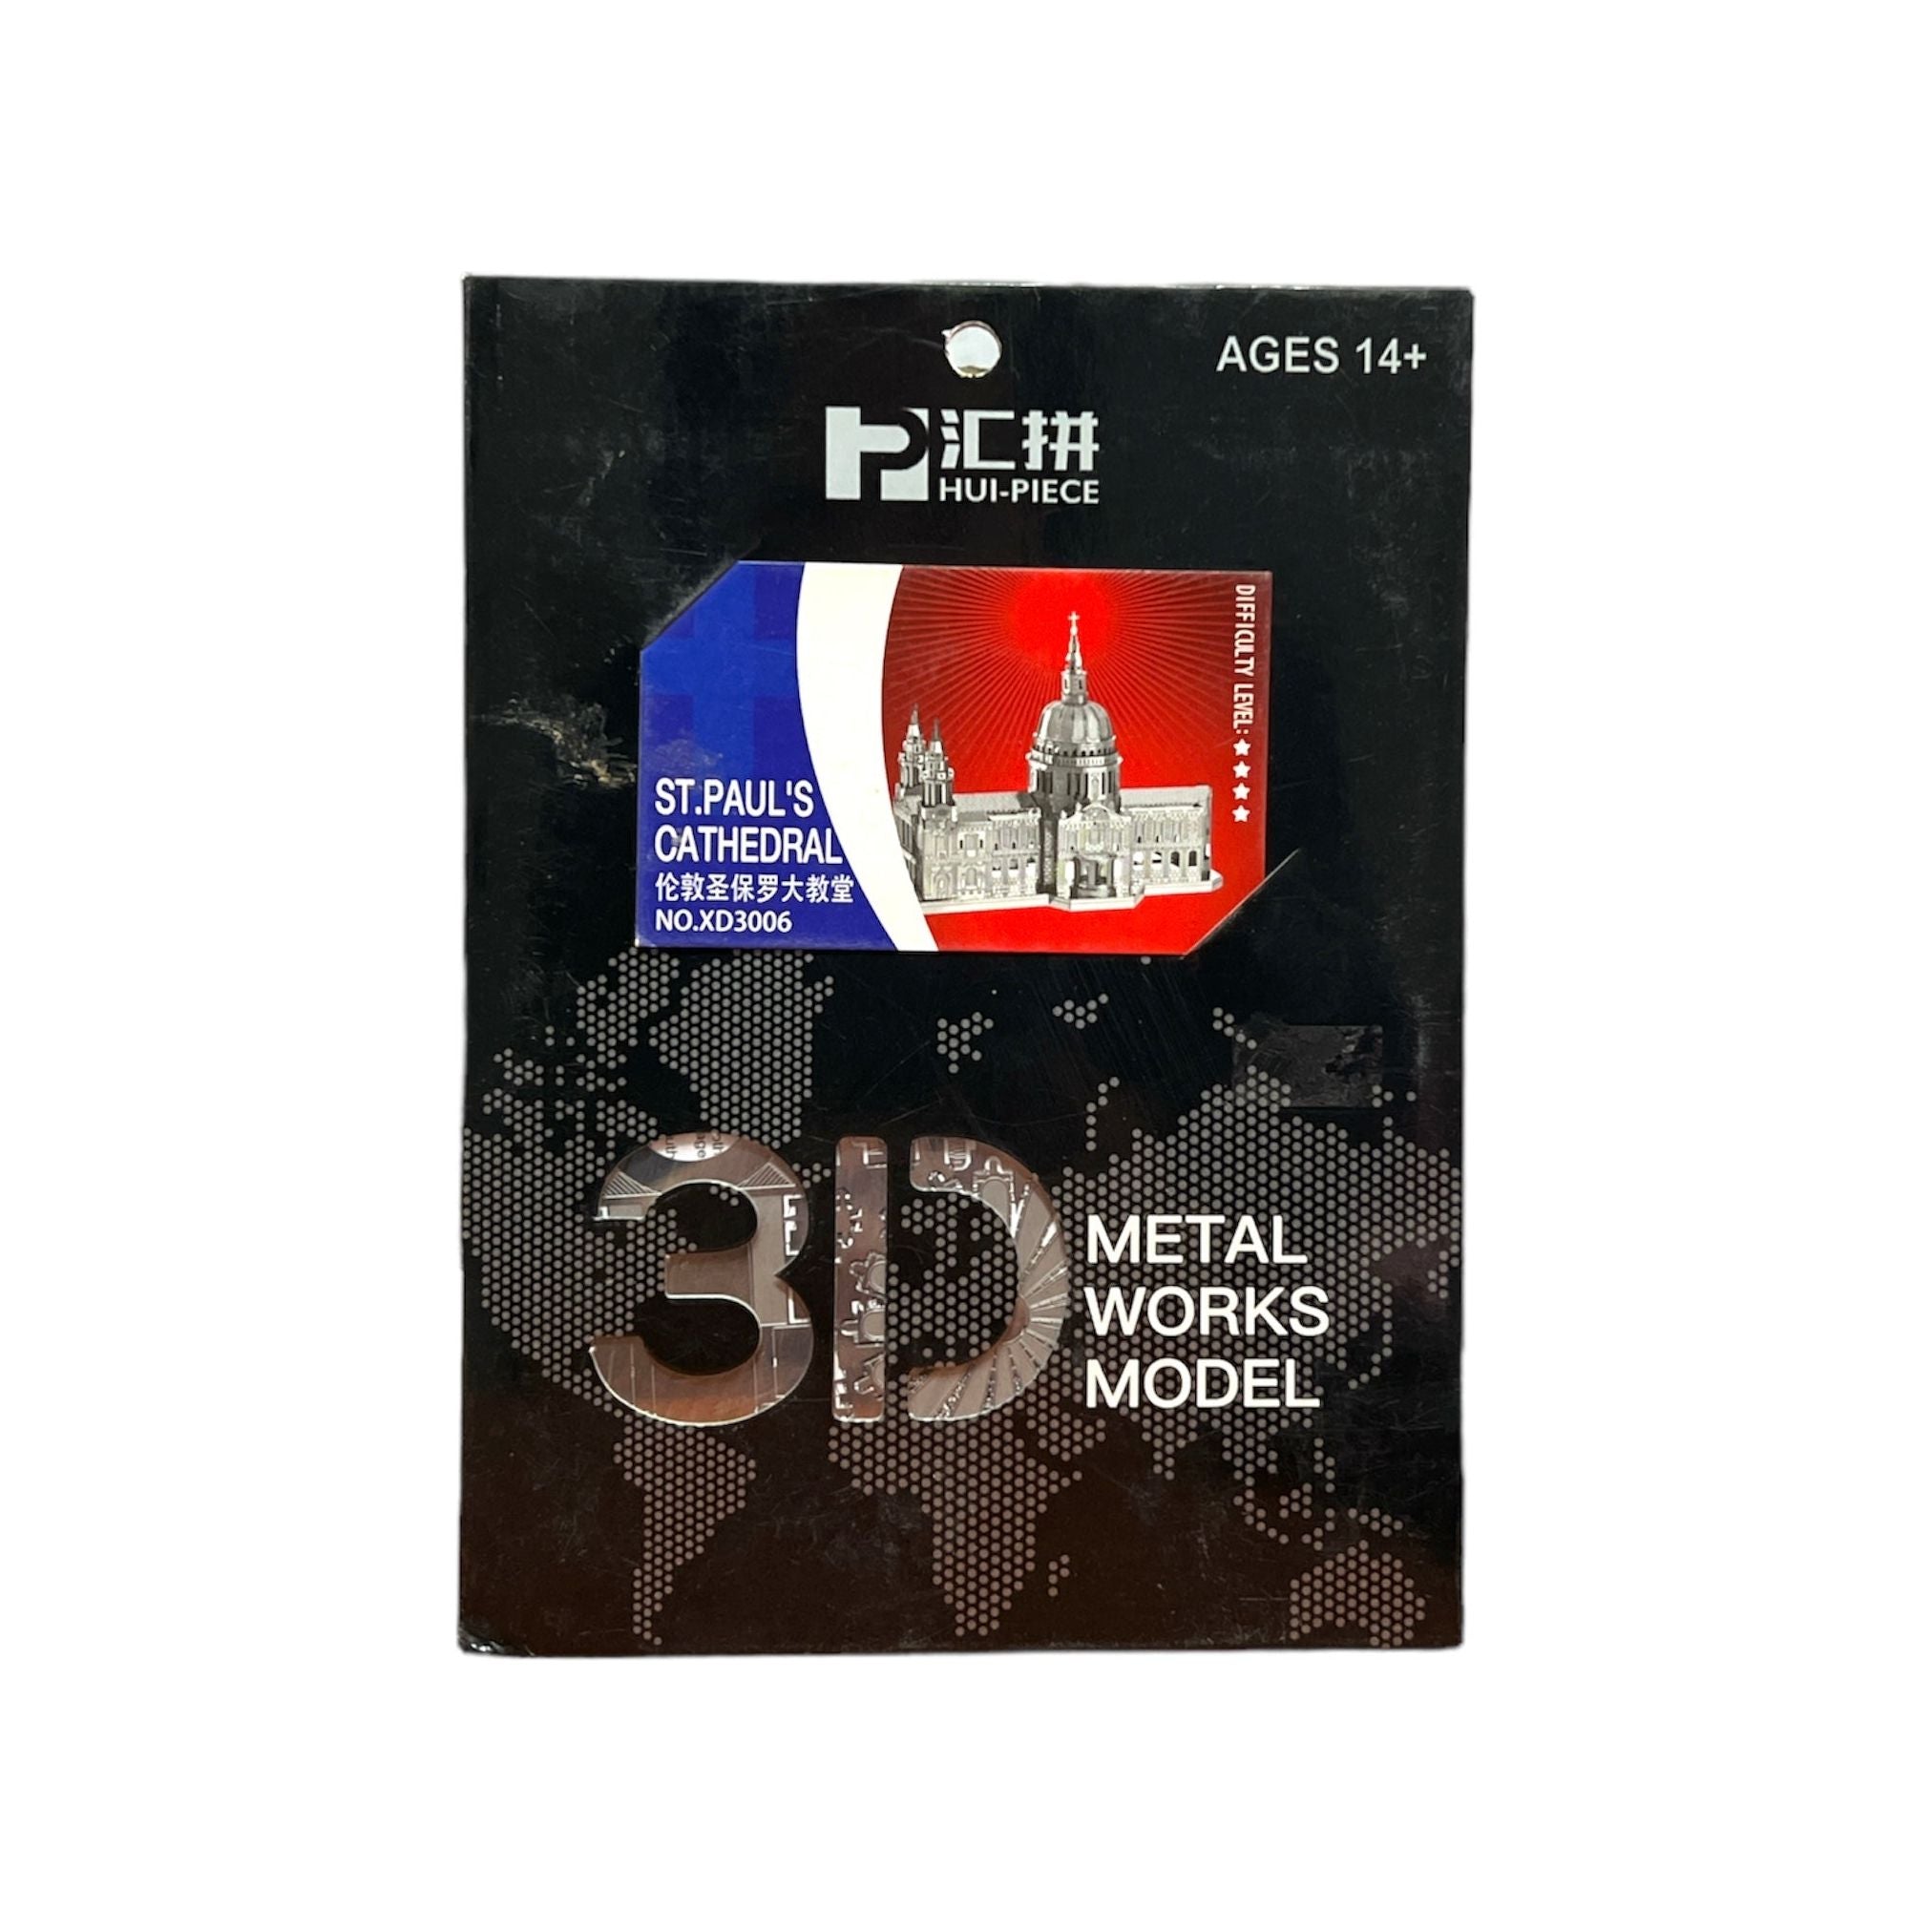 أعمال معدنية ثلاثية الأبعاد موديل PXD 2004 - كاتدرائية القديس بولس